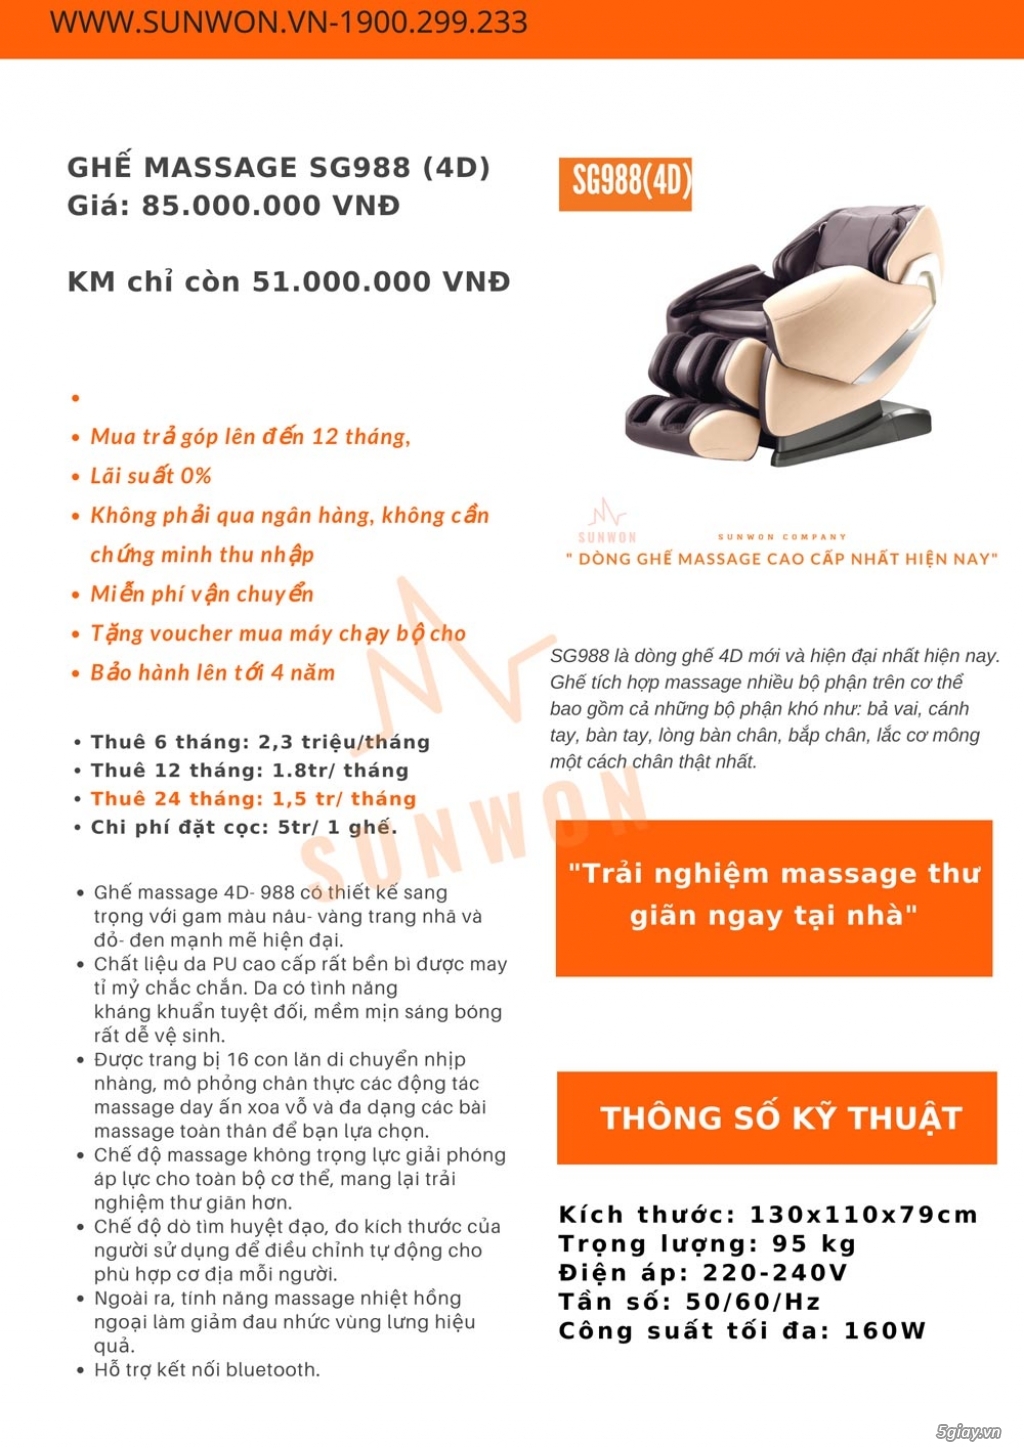 Cơ hội mua ghế massage trả góp với lãi suất 0% cùng Sunwon - 4